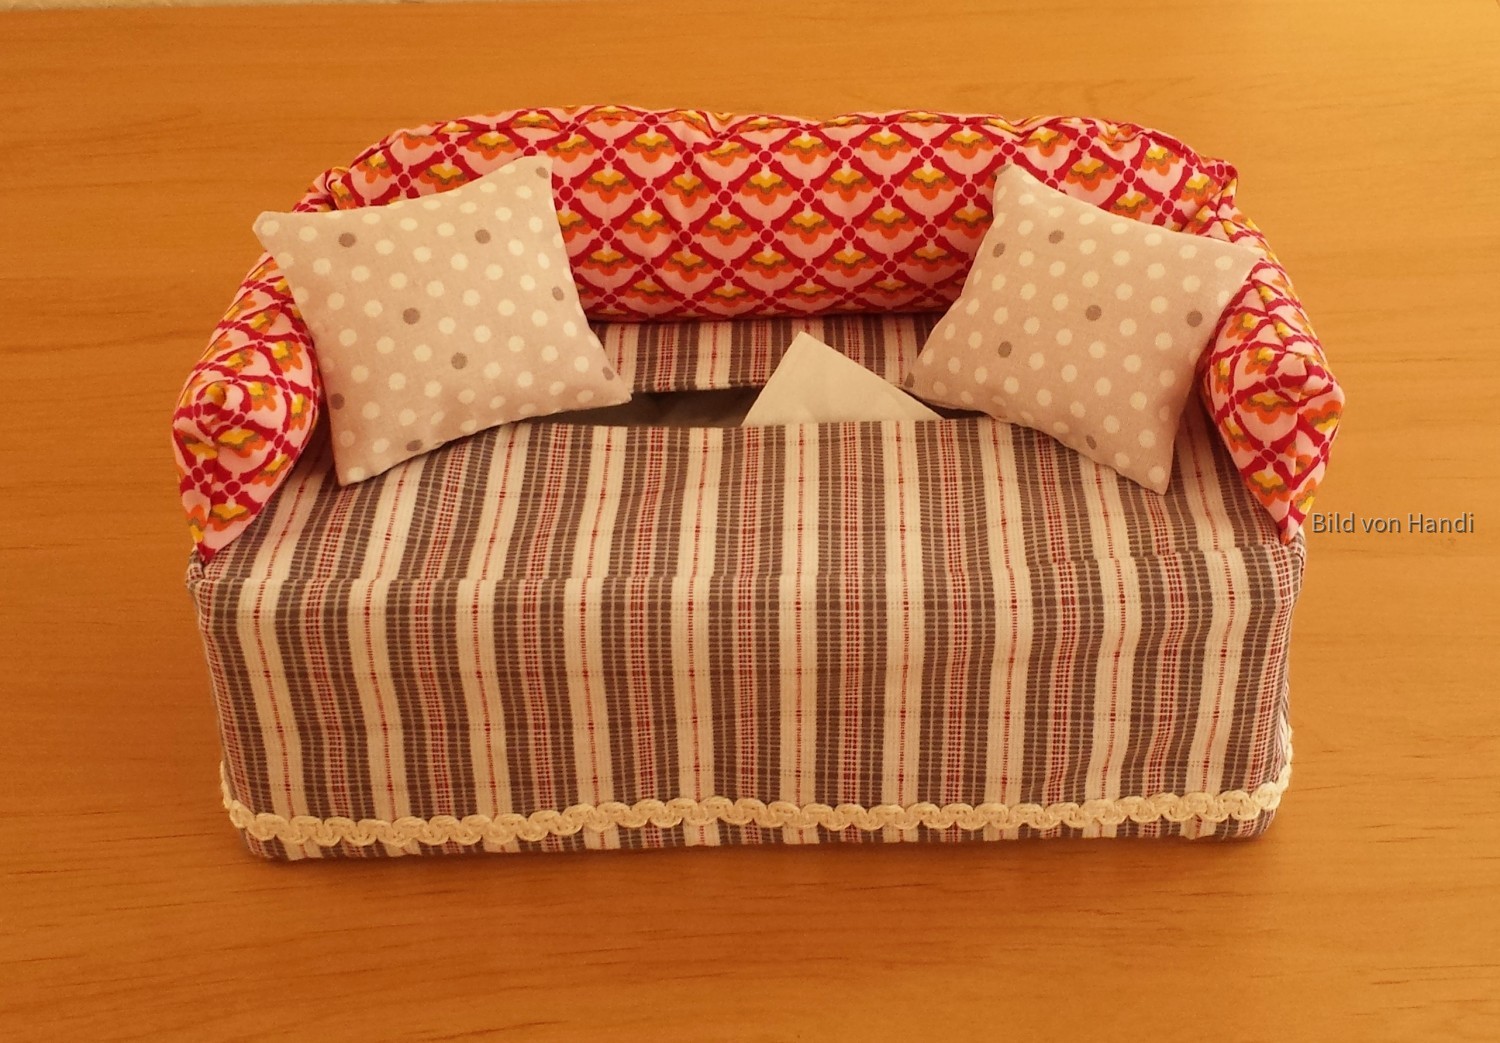 Taschentuch-Sofa rot-braun-natur